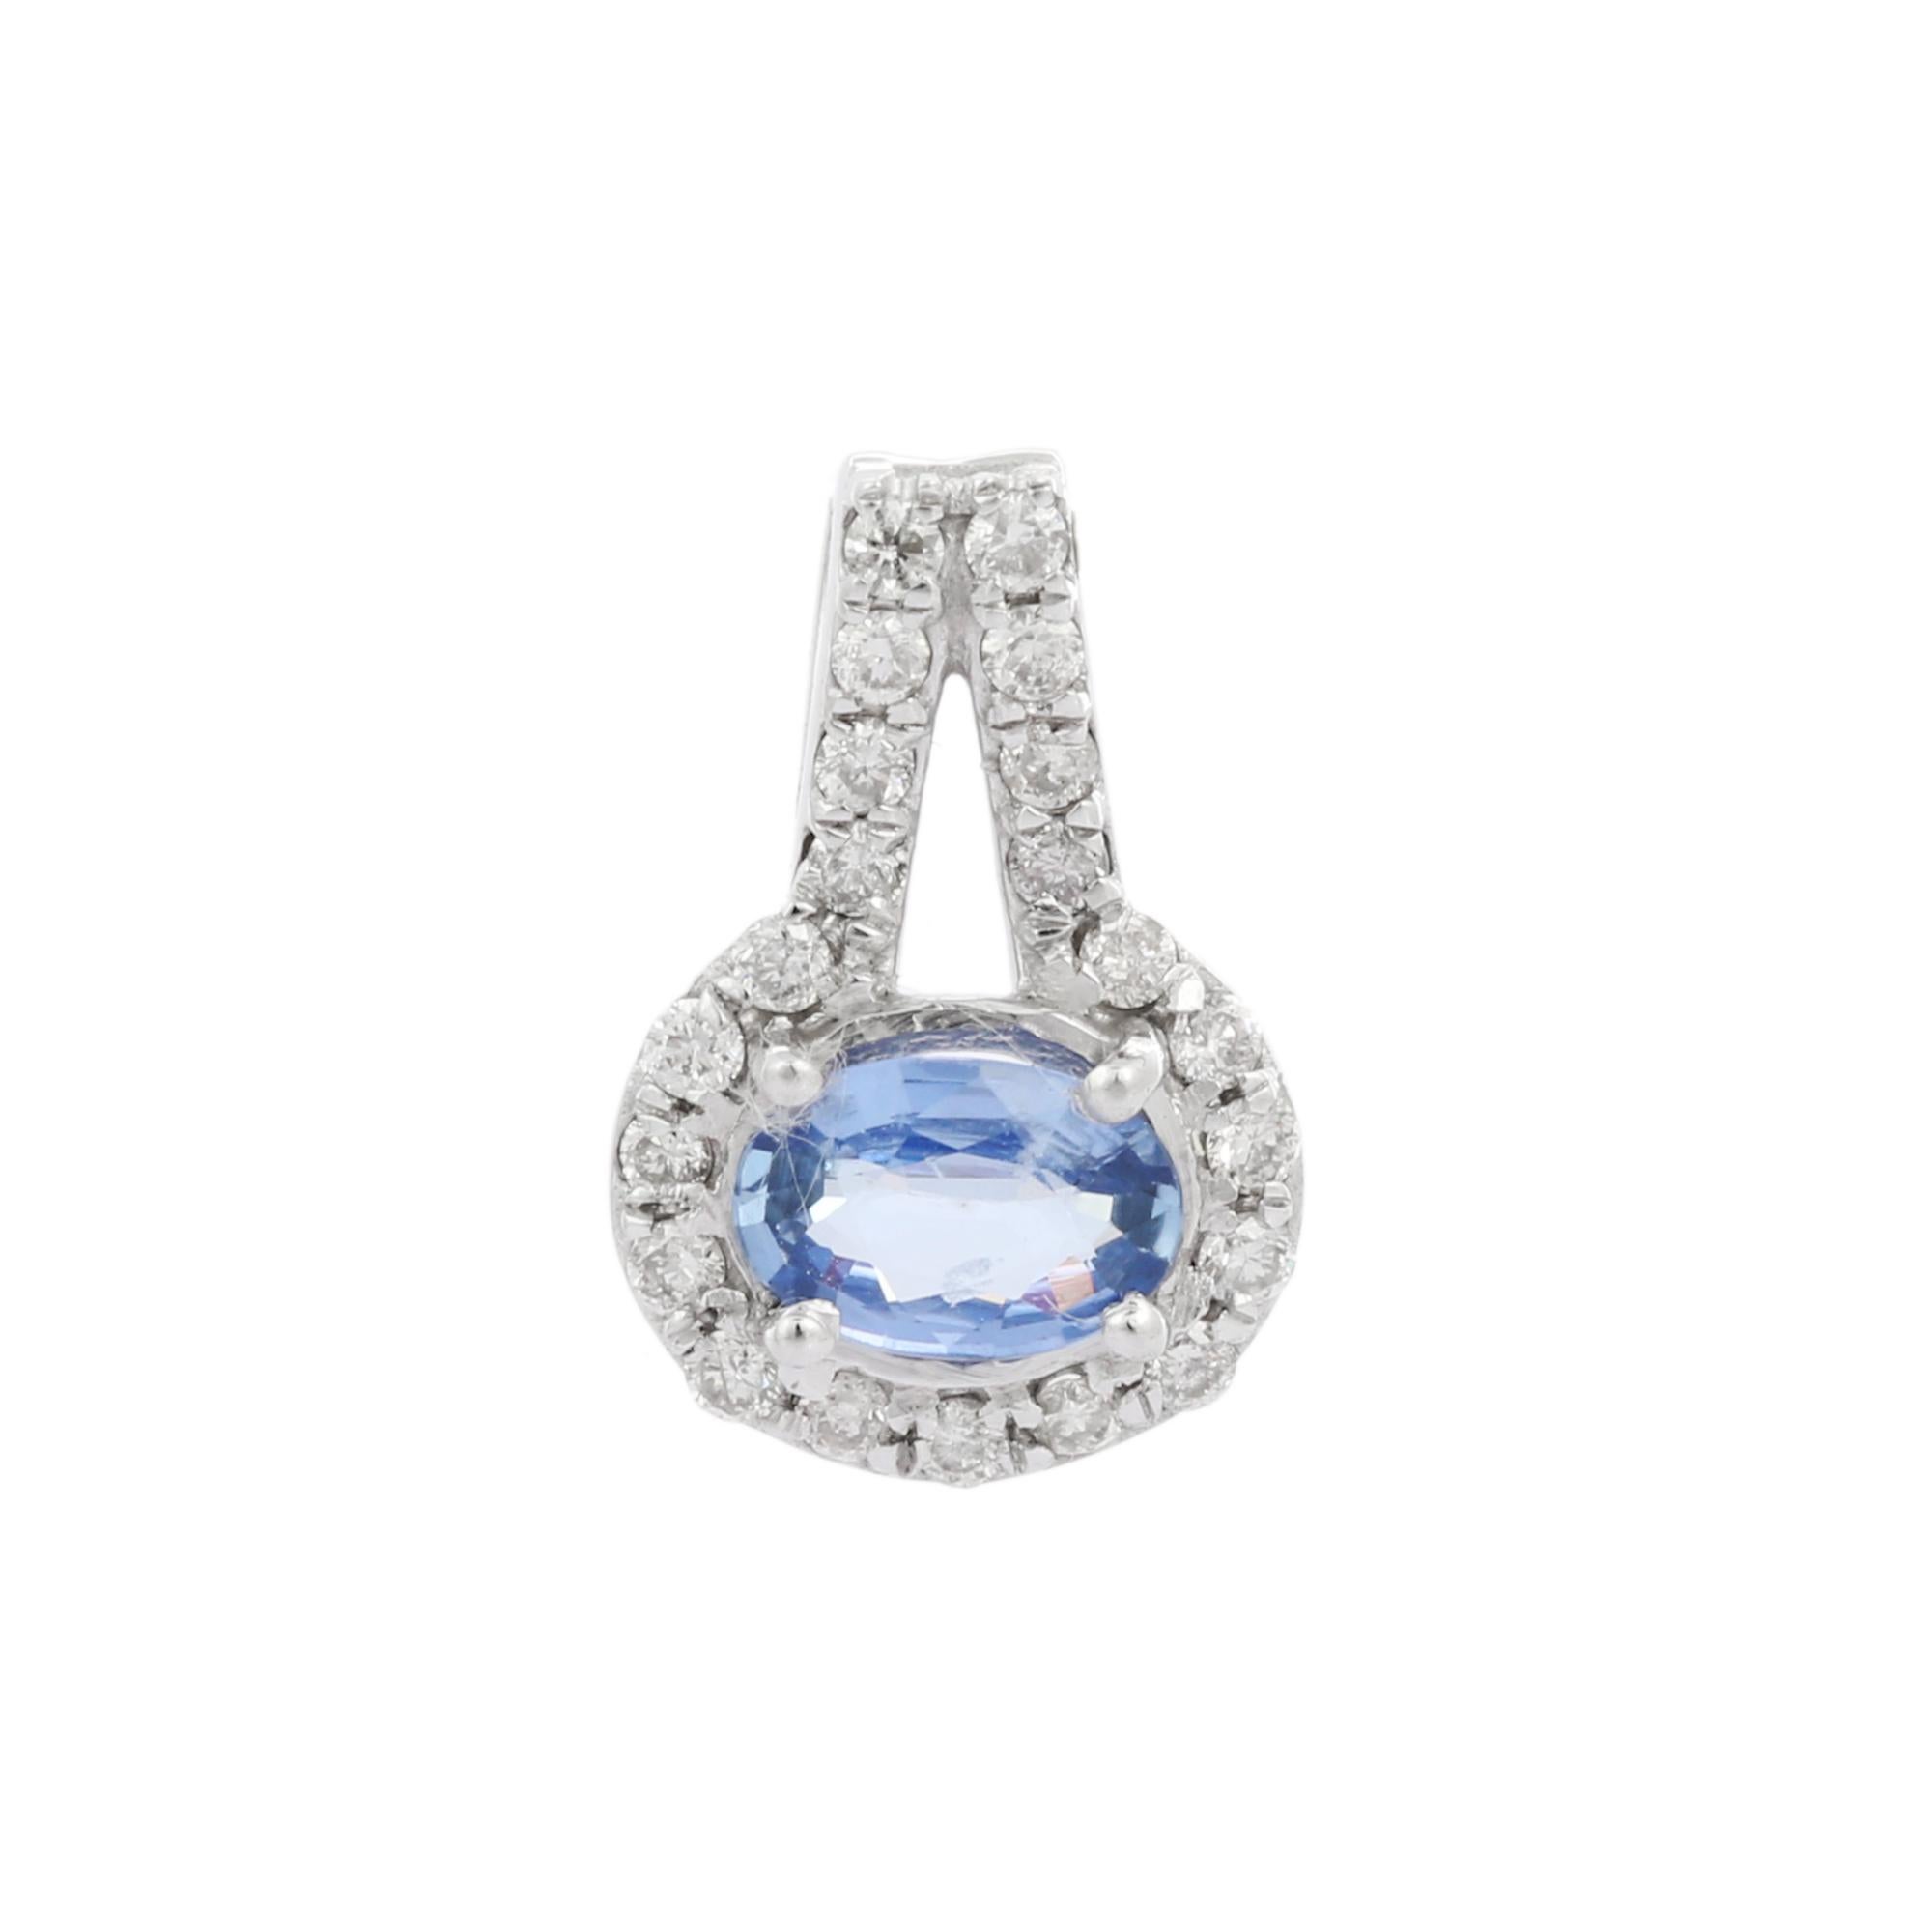 Pendentif en saphir bleu naturel en or 14K. Il est orné d'un saphir de taille ovale constellé de diamants qui complètent votre look avec une touche décente. Les pendentifs sont utilisés pour être portés ou offerts pour représenter l'amour et les